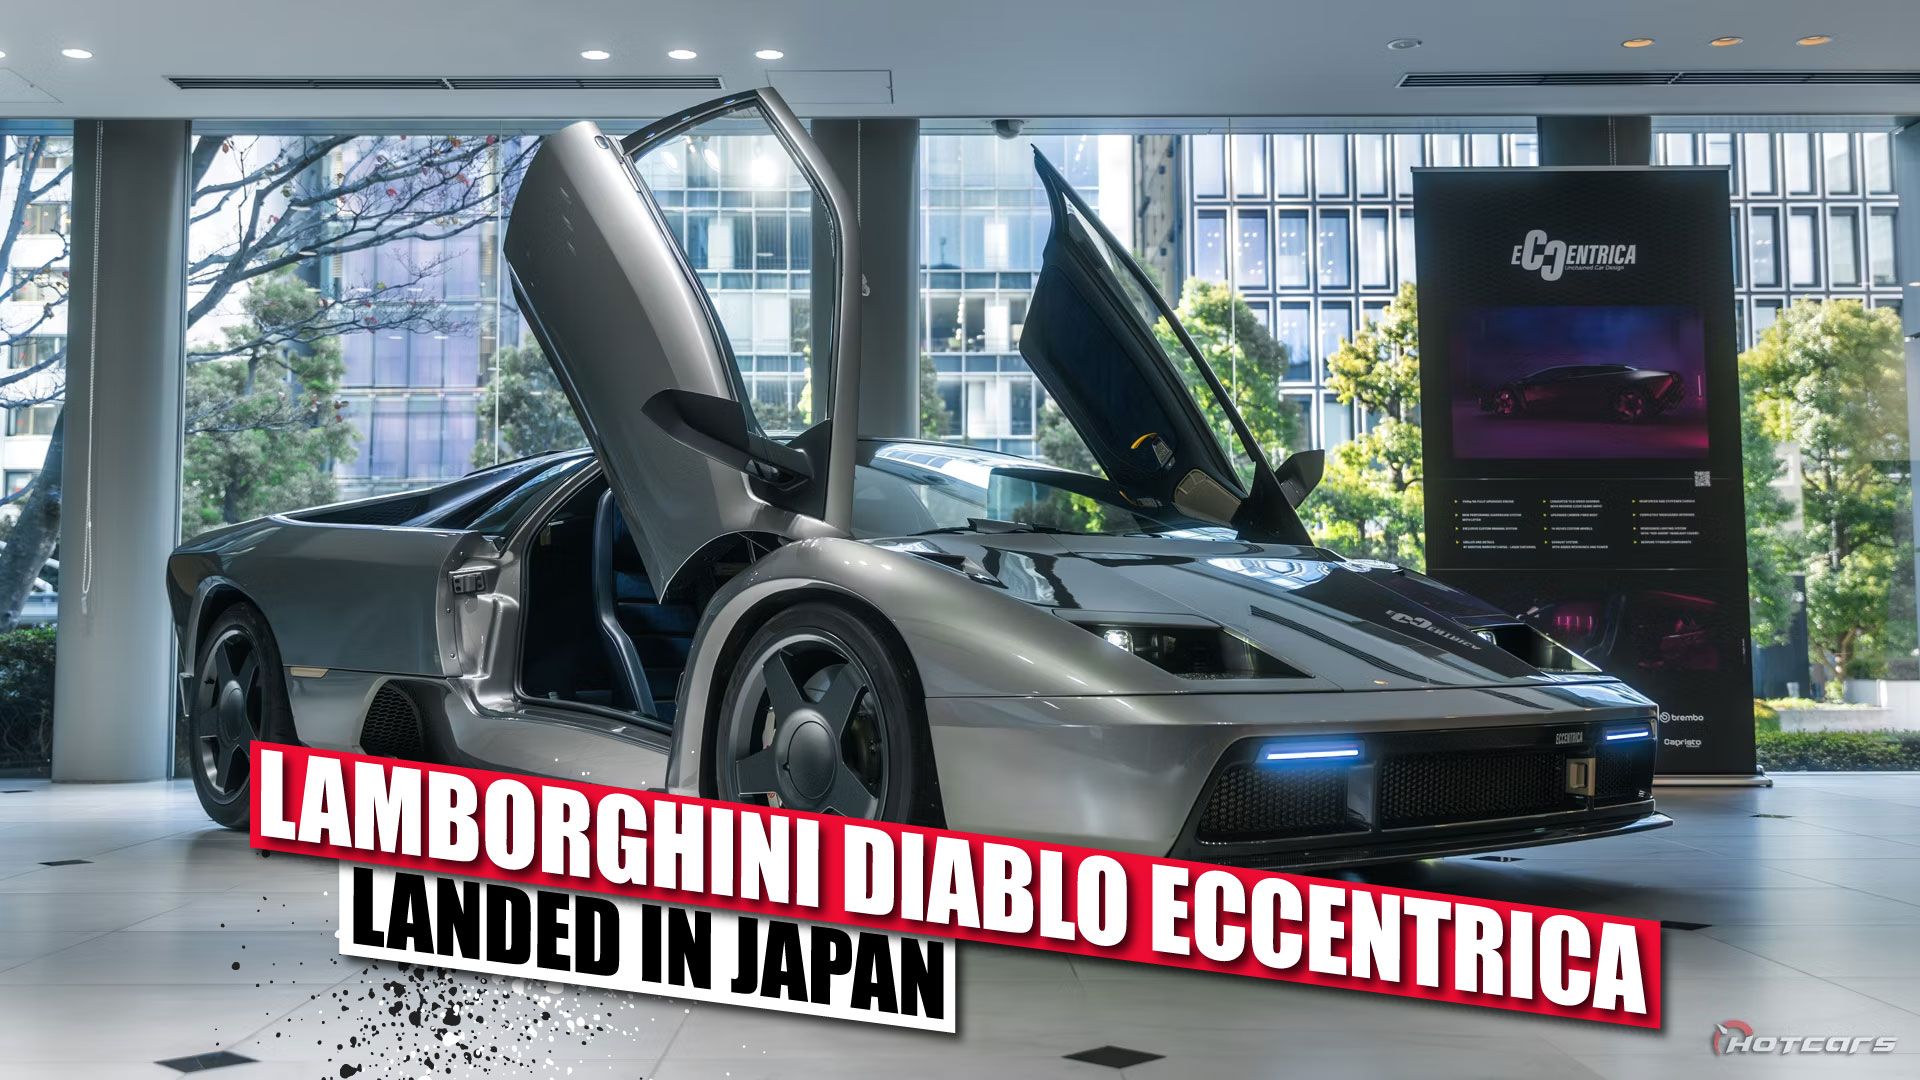 Lamborghini Diablo Eccentrica: A New Lamborghini Has Landed In Japan